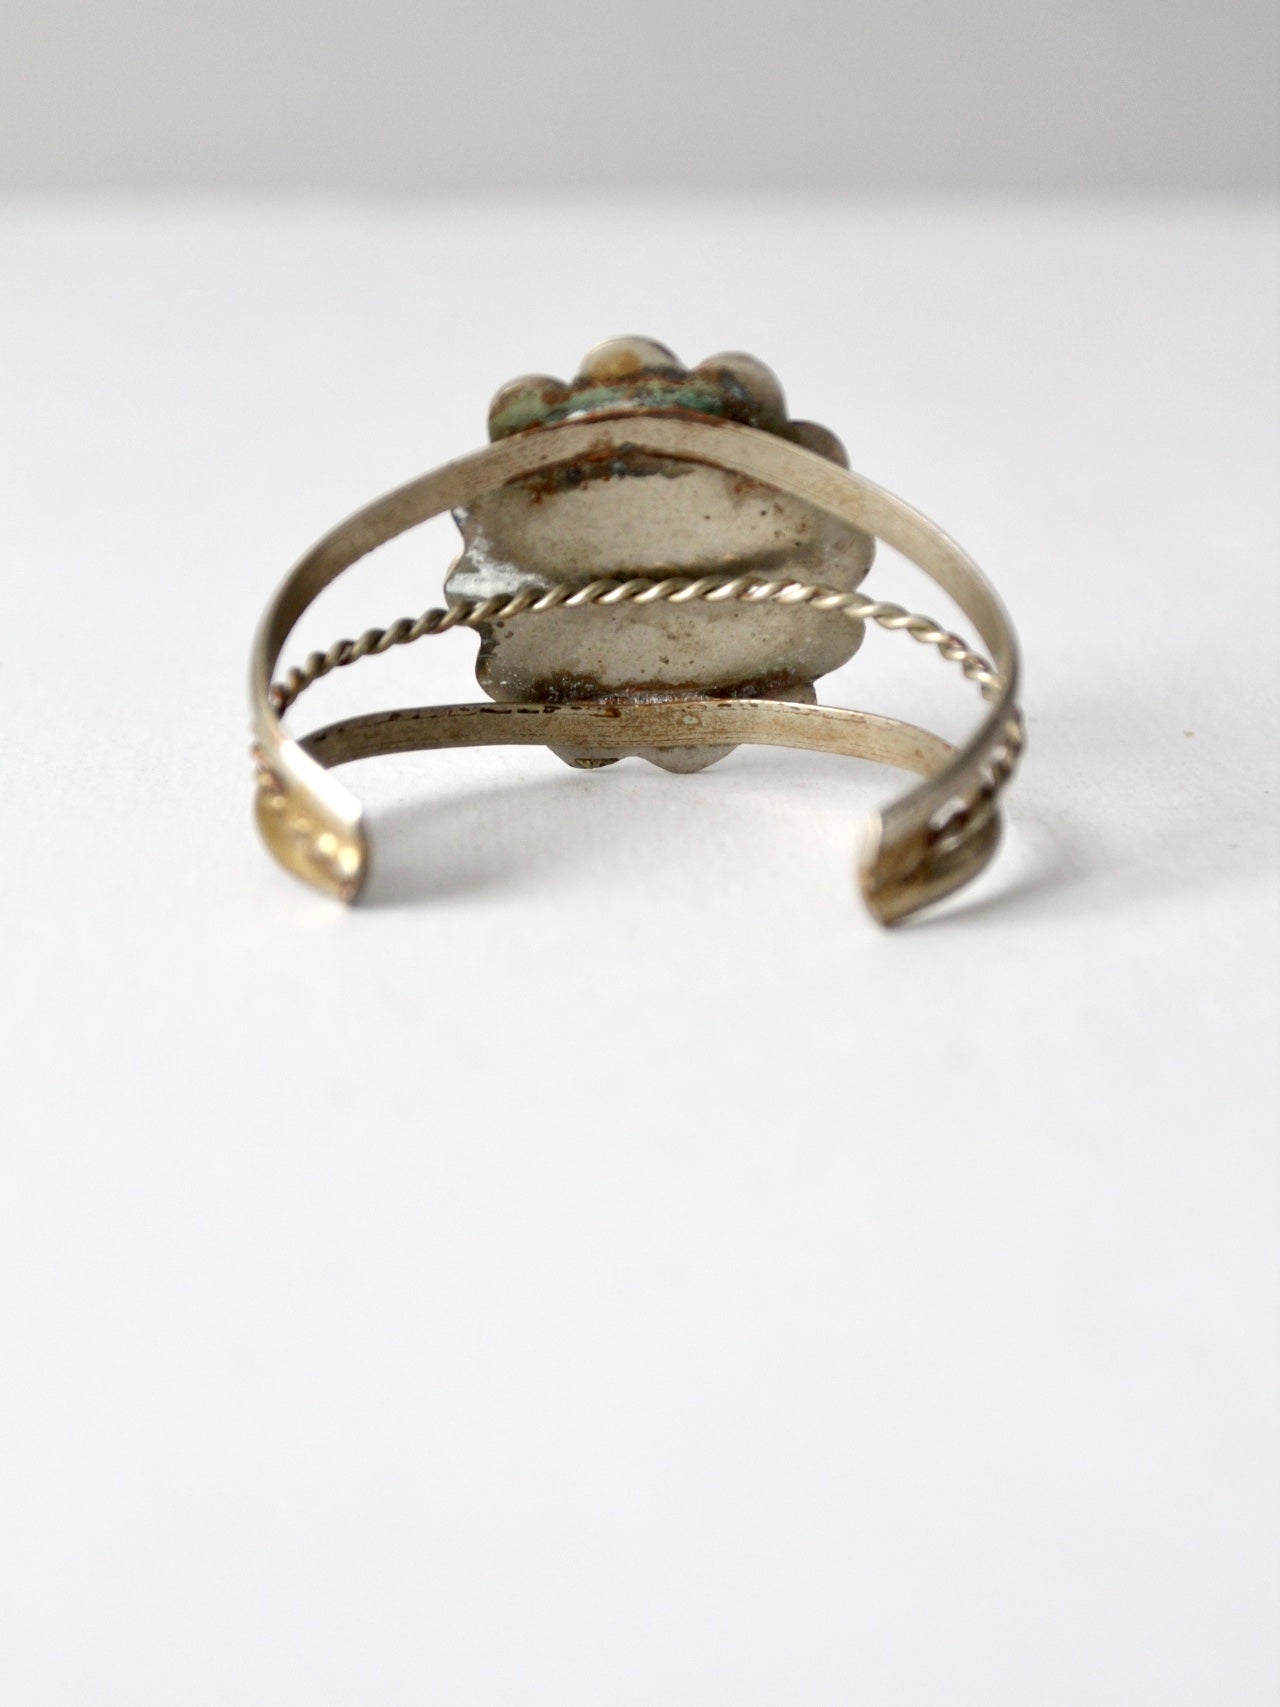 vintage abalone shell cuff bracelet